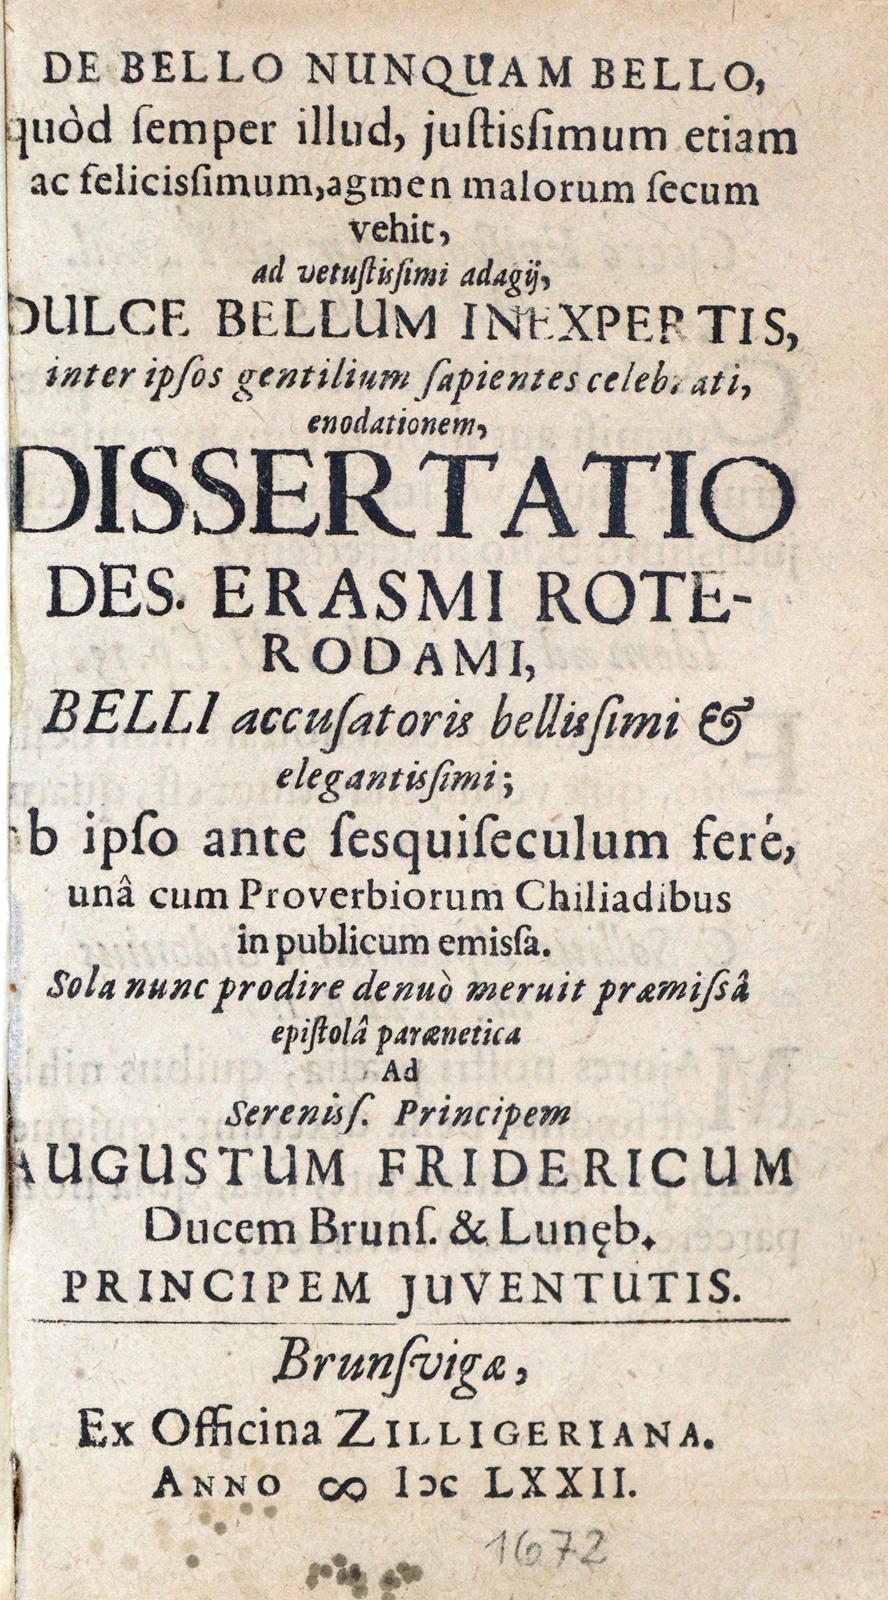 Erasmus Roterodamus,D. | Bild Nr.1